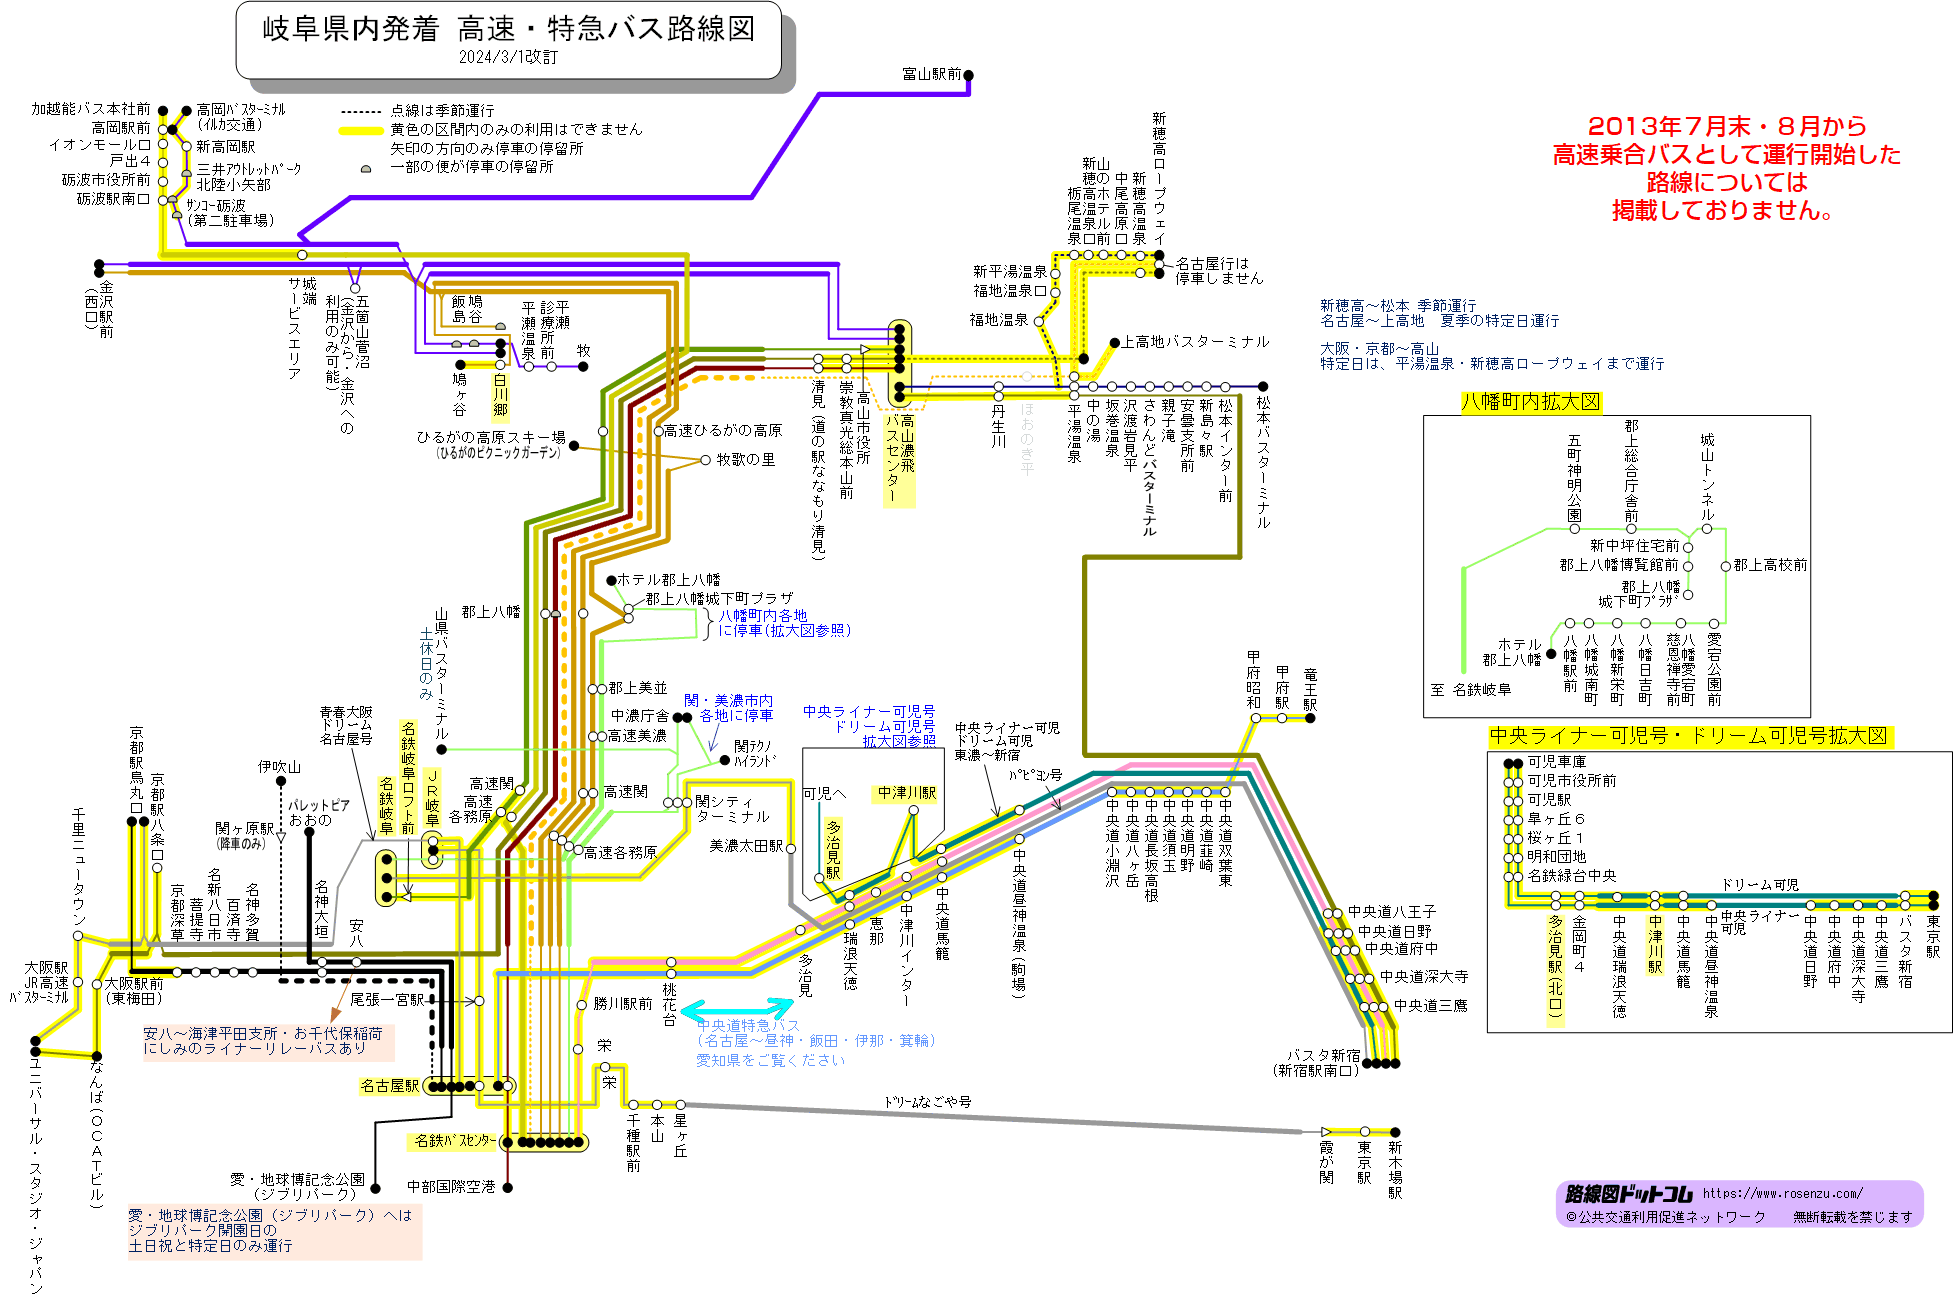 路線図ドットコム 高速バス 岐阜県発着高速バス 特急バス路線図